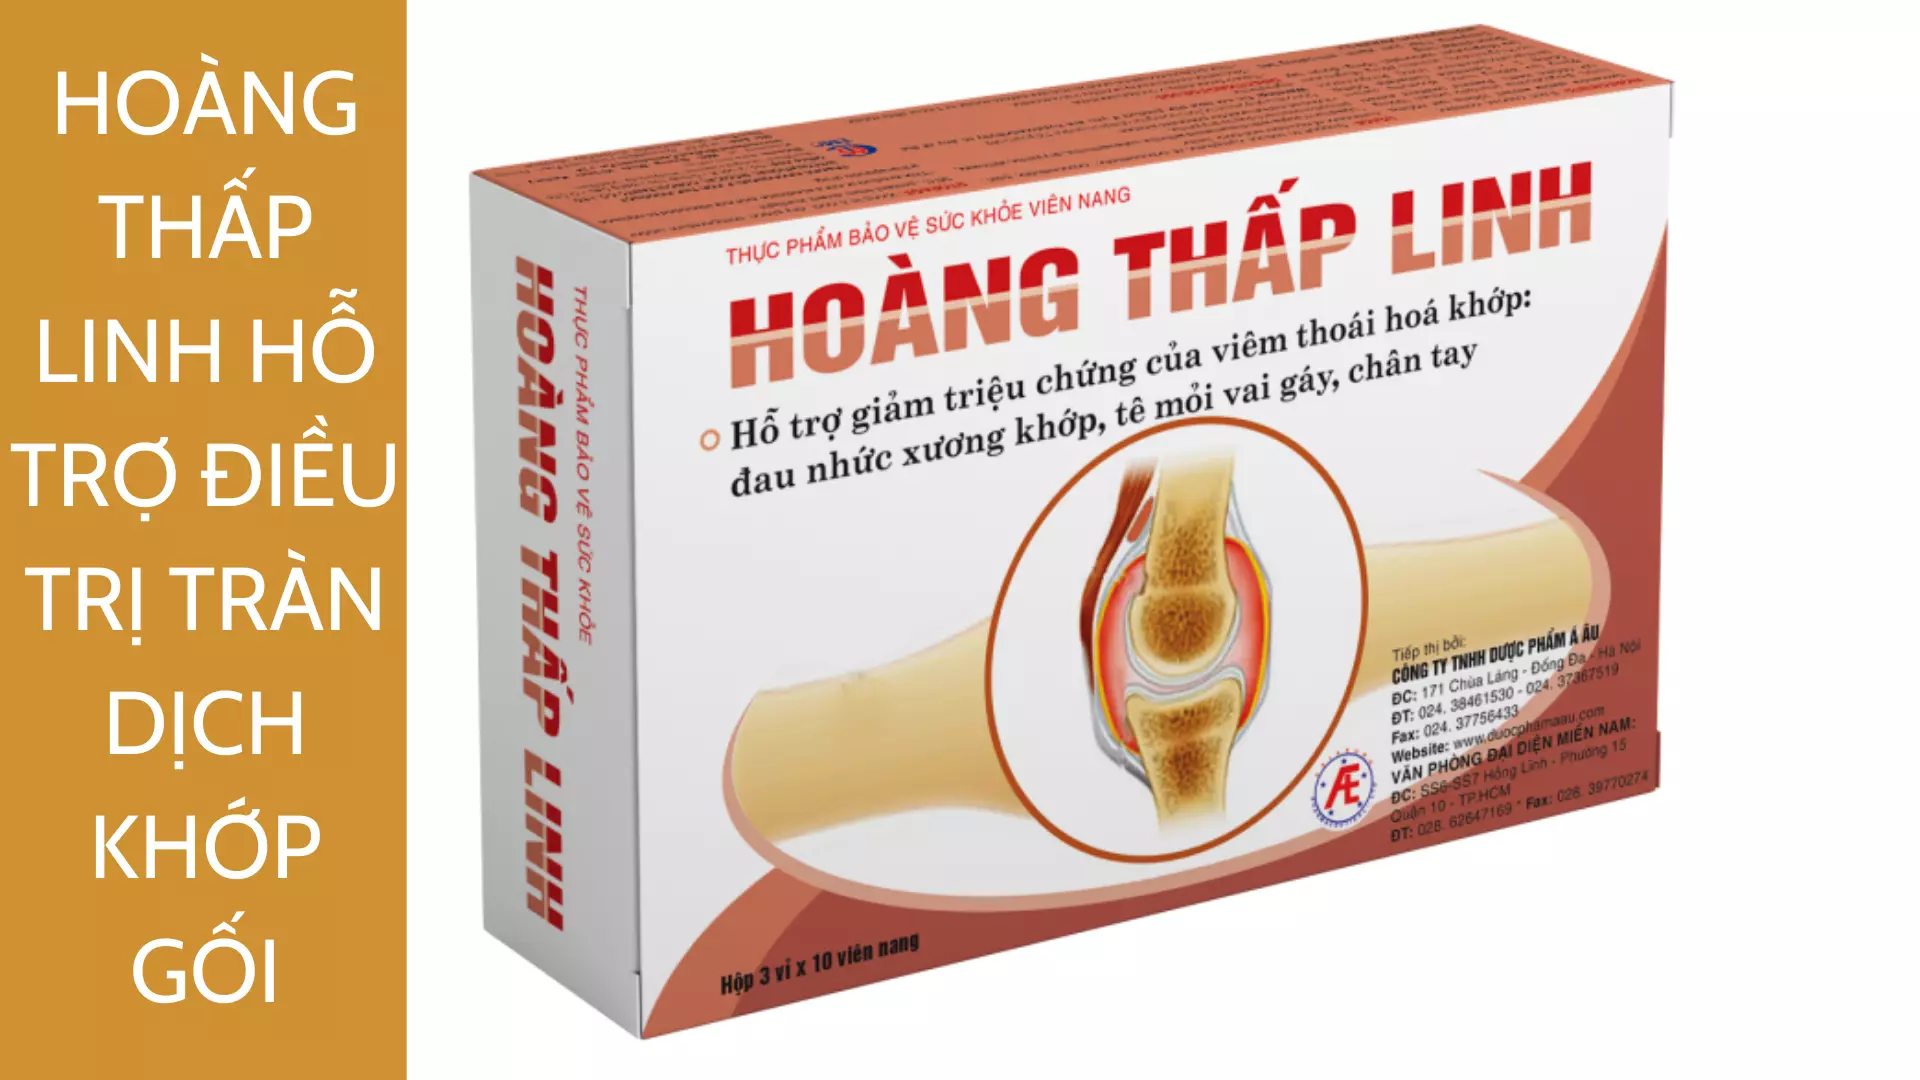 Hoang-Thap-Linh-Giai-phap-cho-nguoi-bi-tran-dich-khop-goi